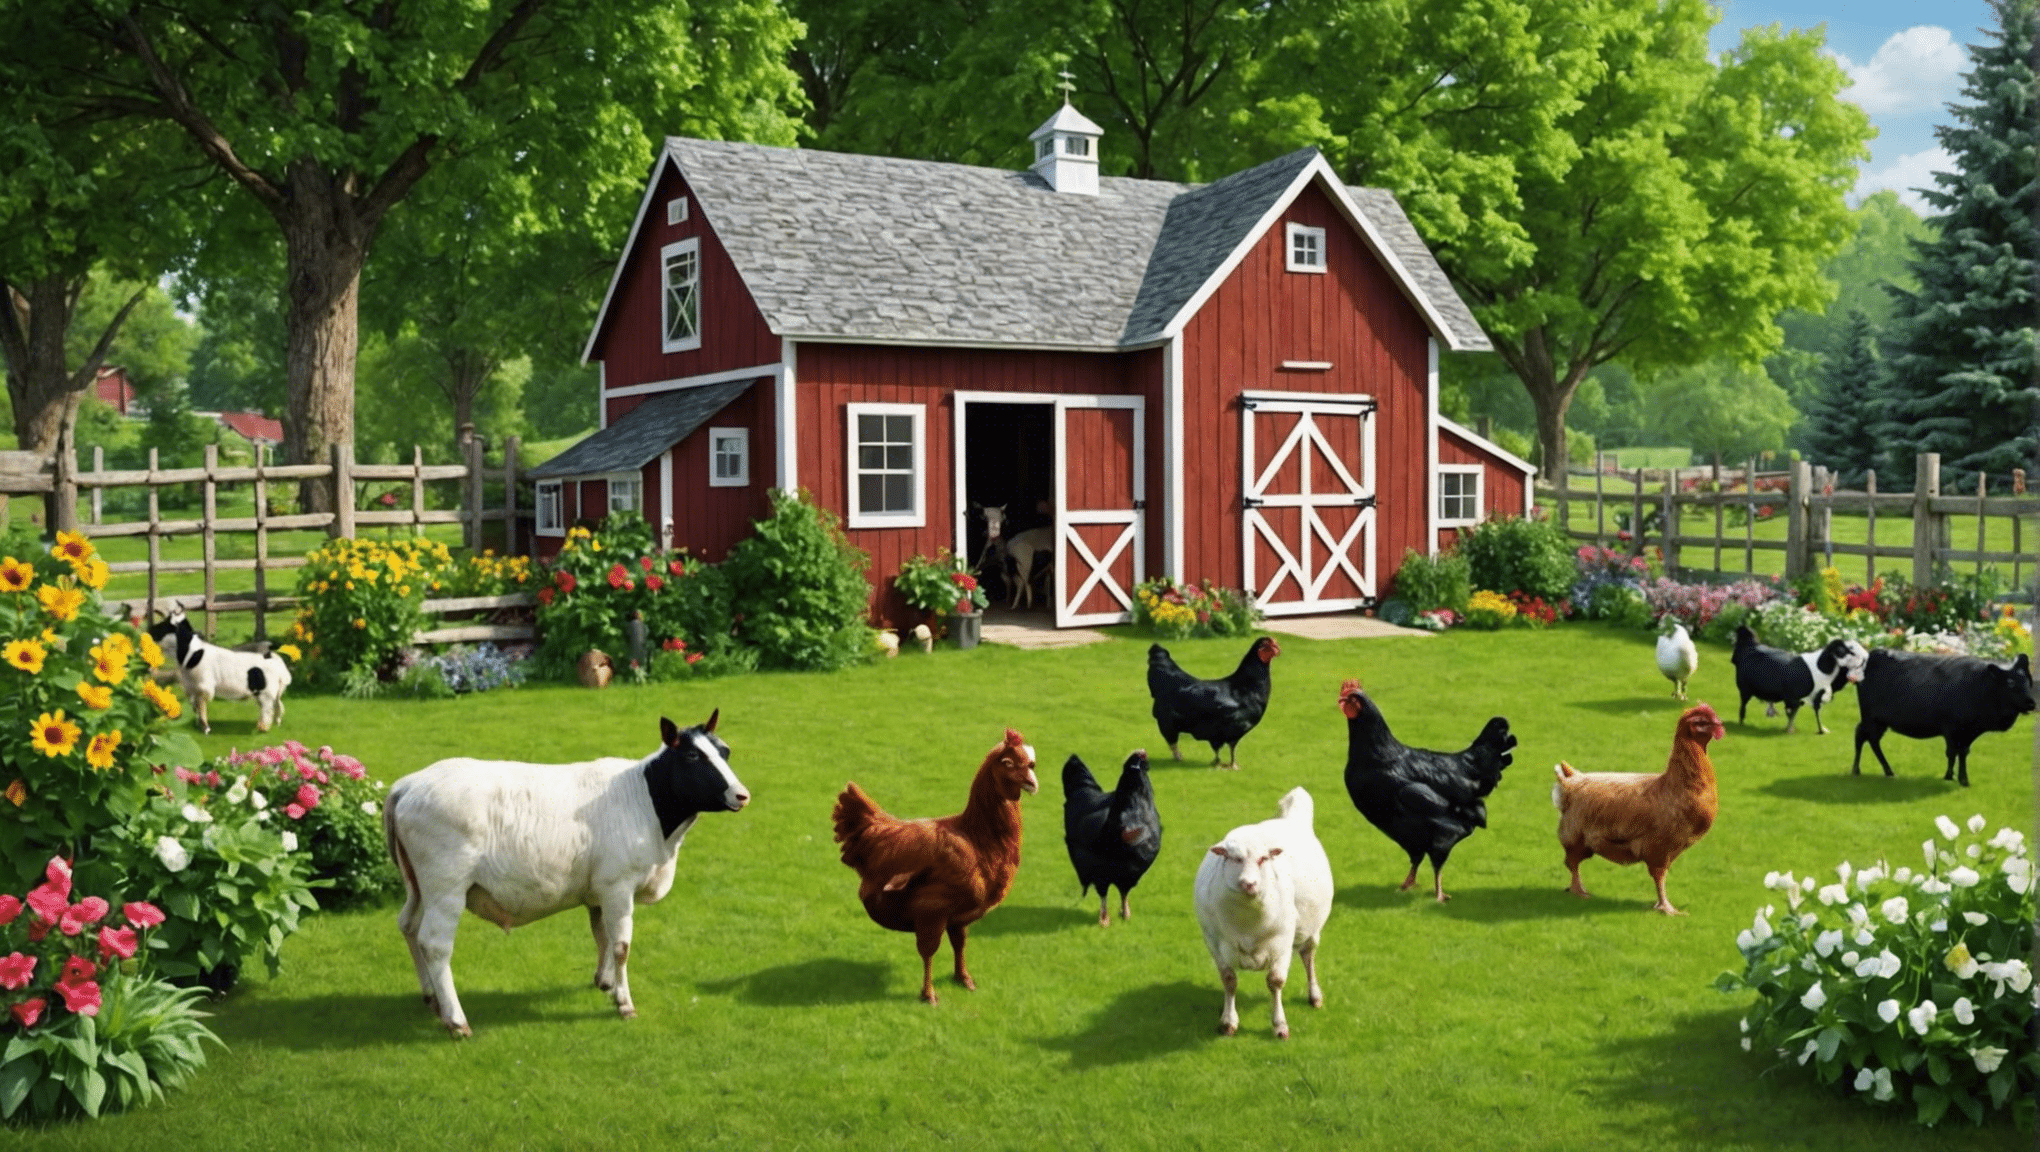 descubra os benefícios de ter animais de fazenda no quintal para sua casa e família. aprenda como criar, cuidar e desfrutar de animais de fazenda em seu quintal.